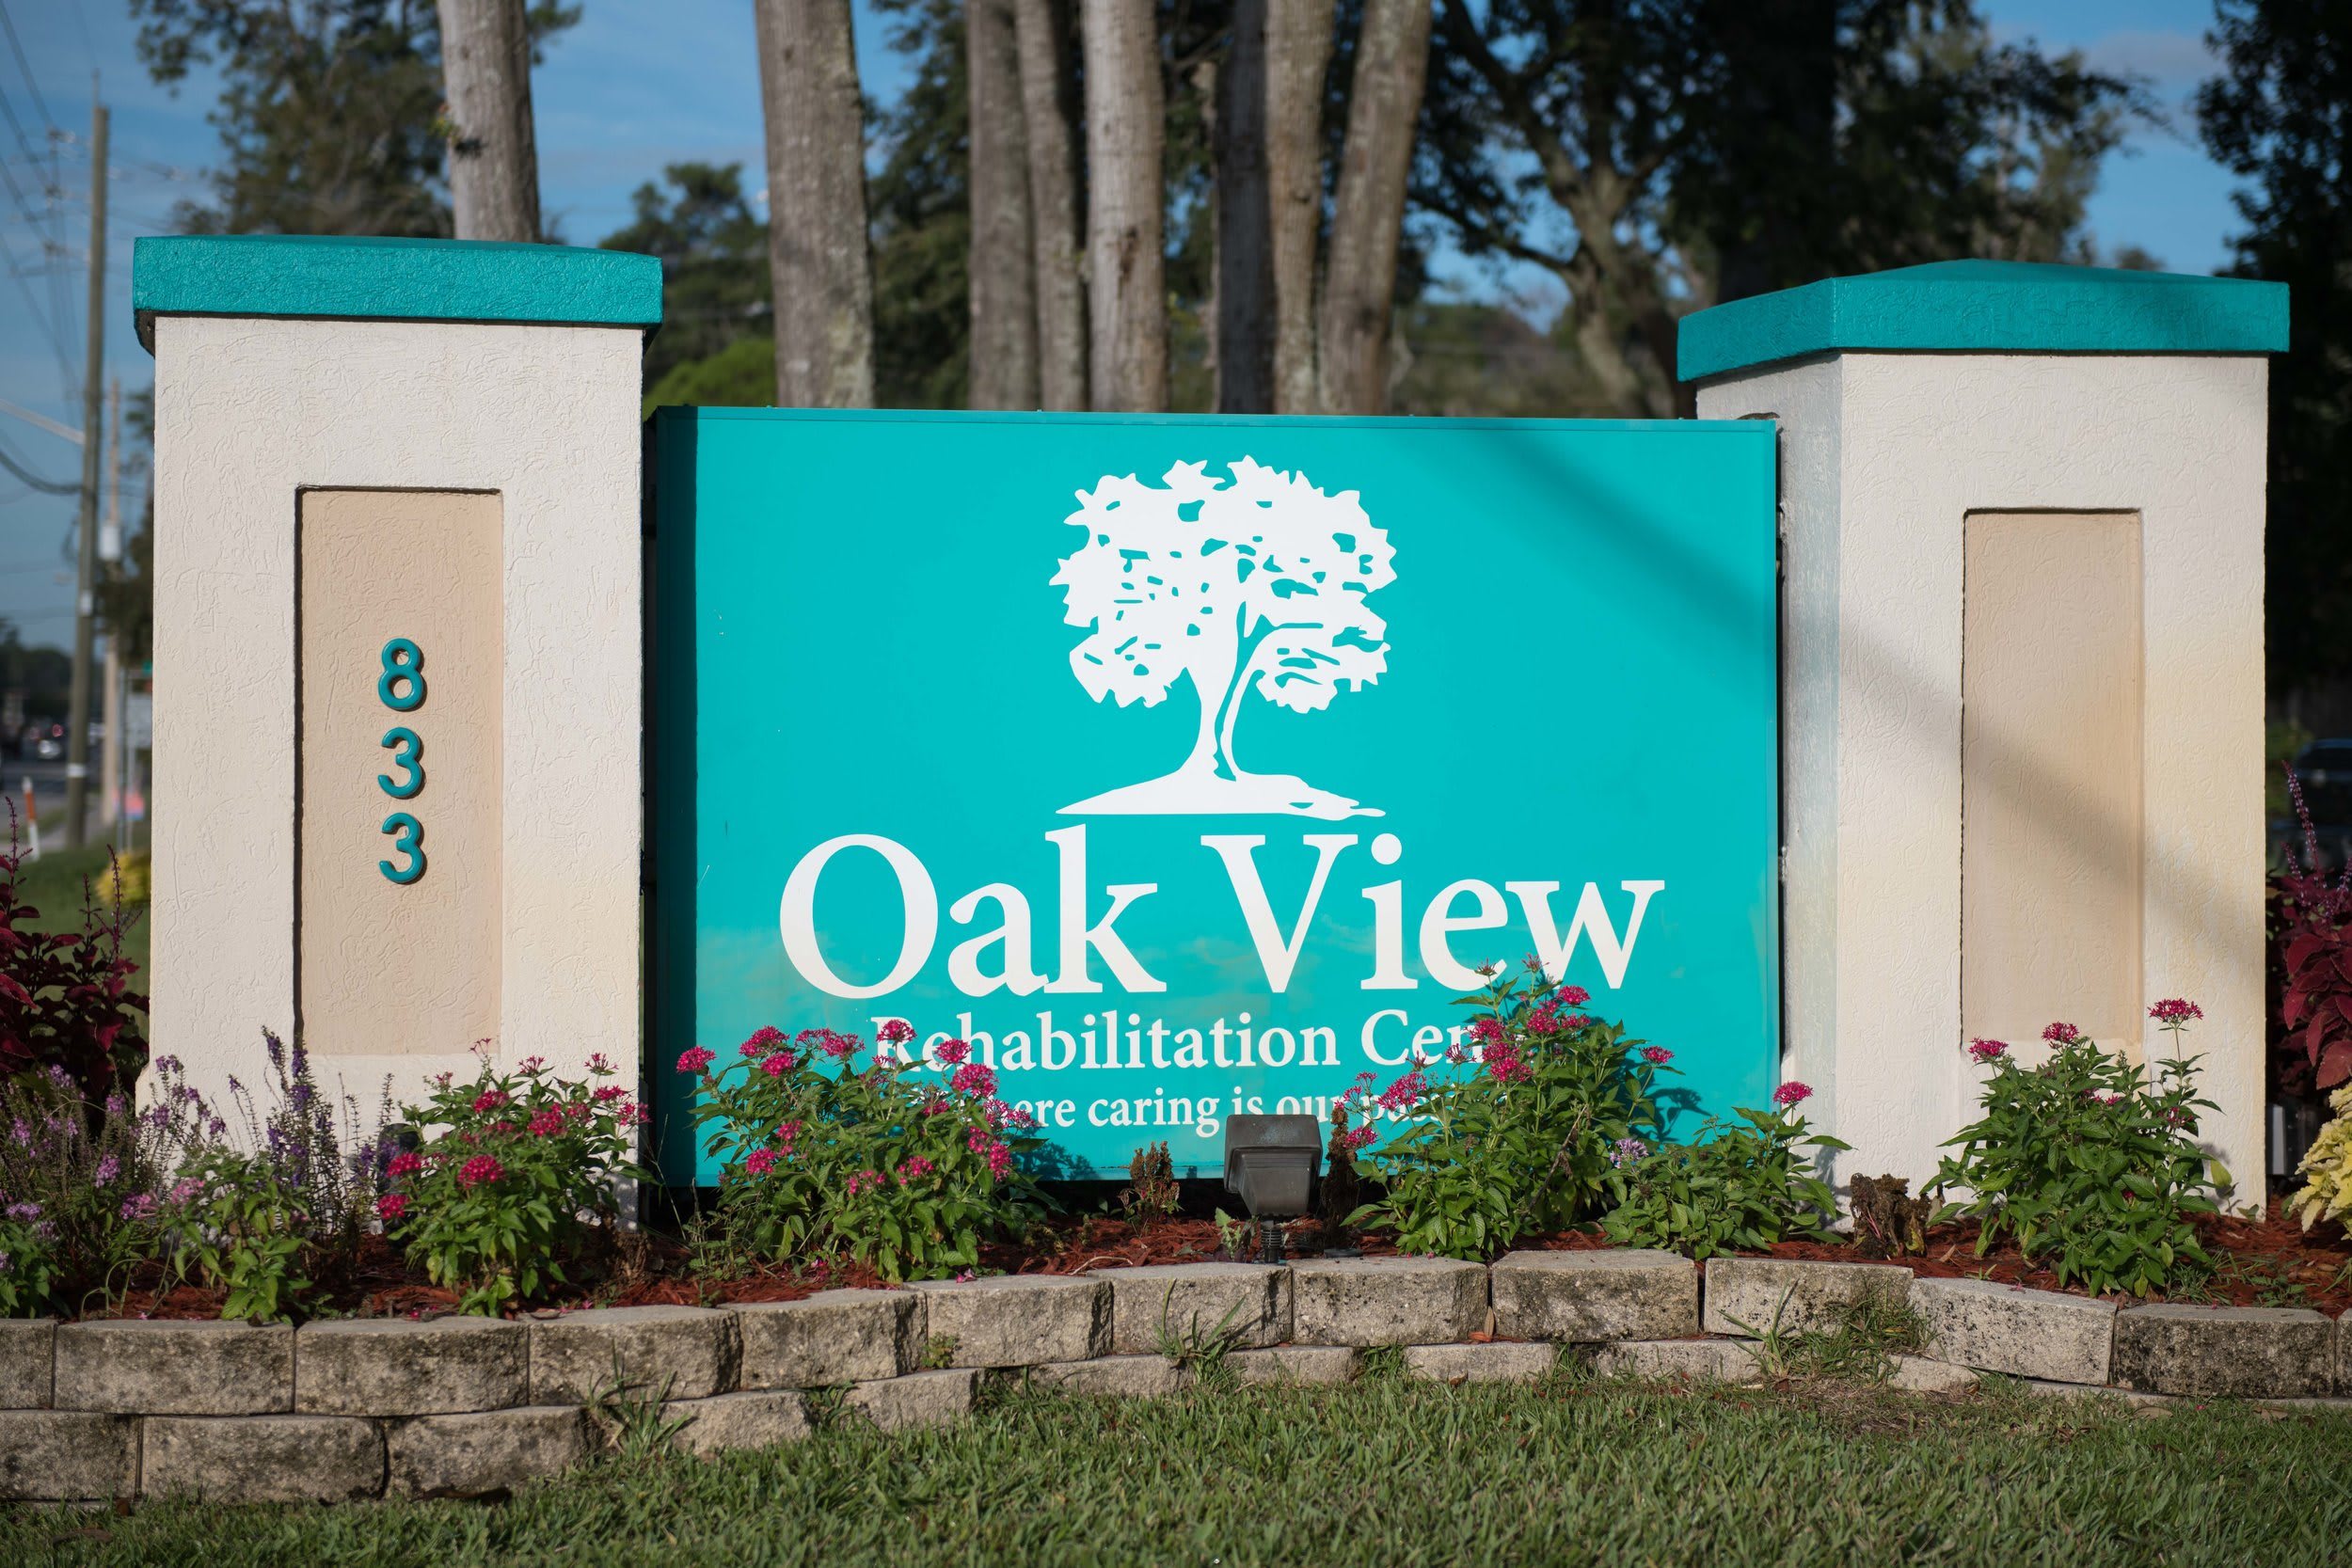 Oakview Rehabilitation Center